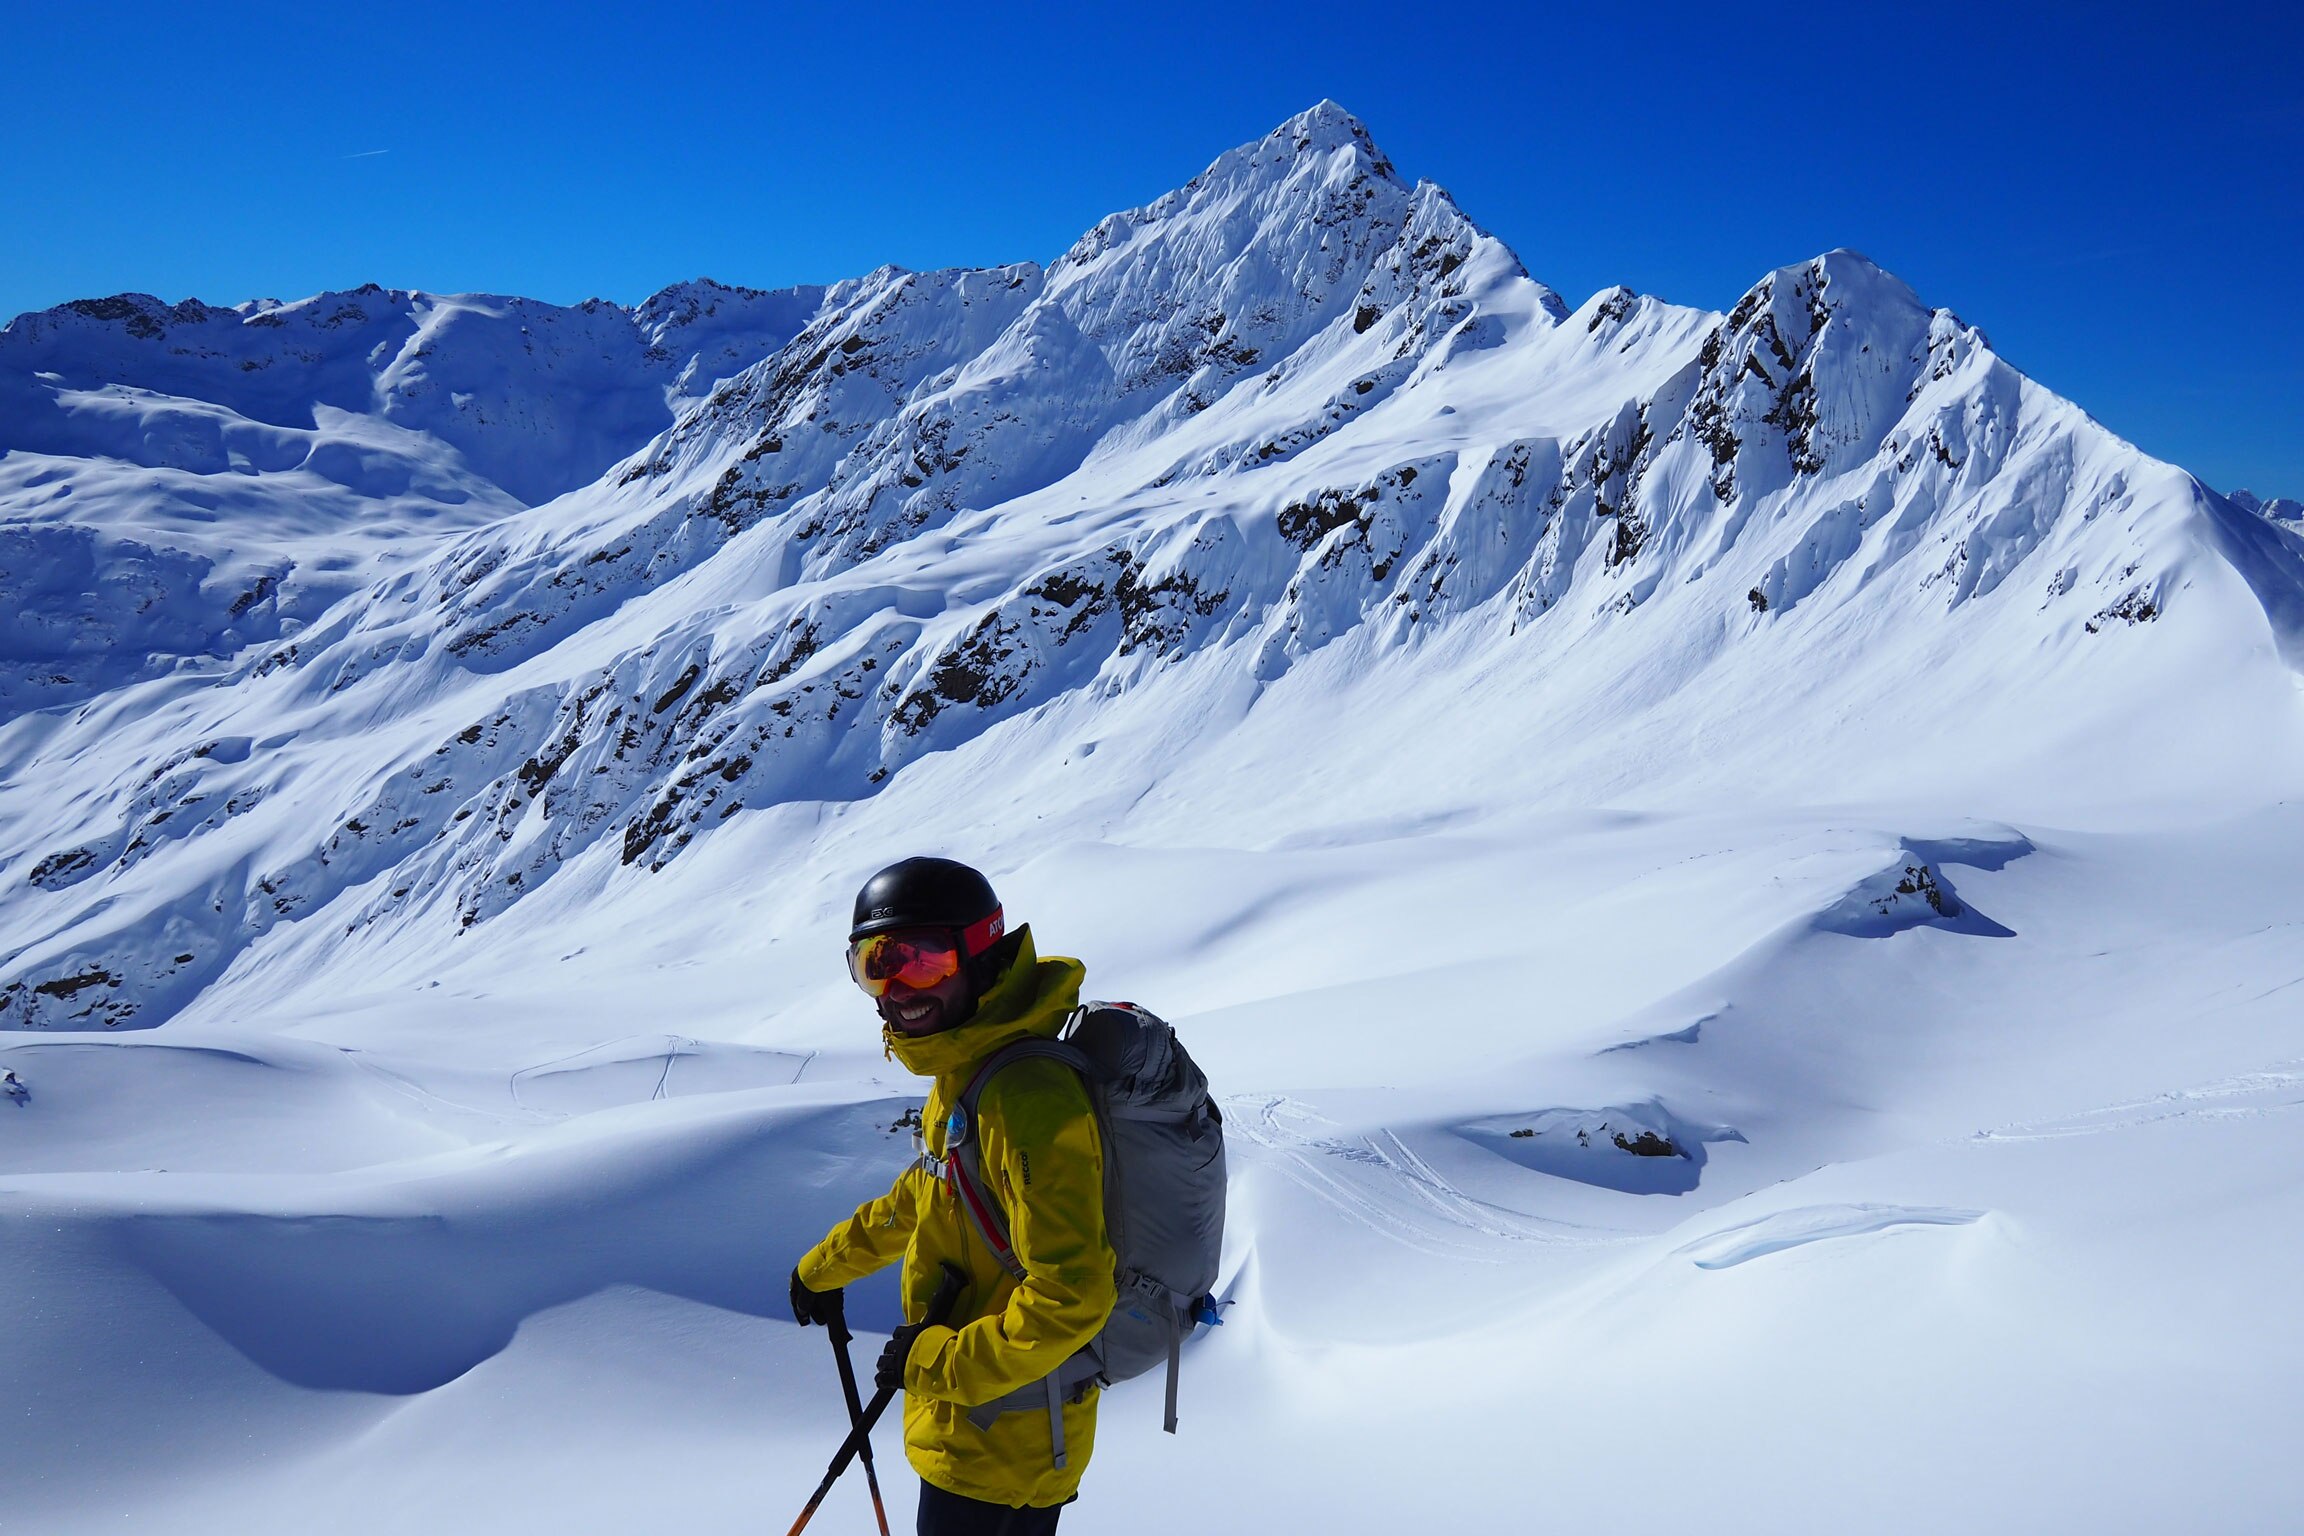 Wintersportler im Gelände: Freeriden am Arlberg